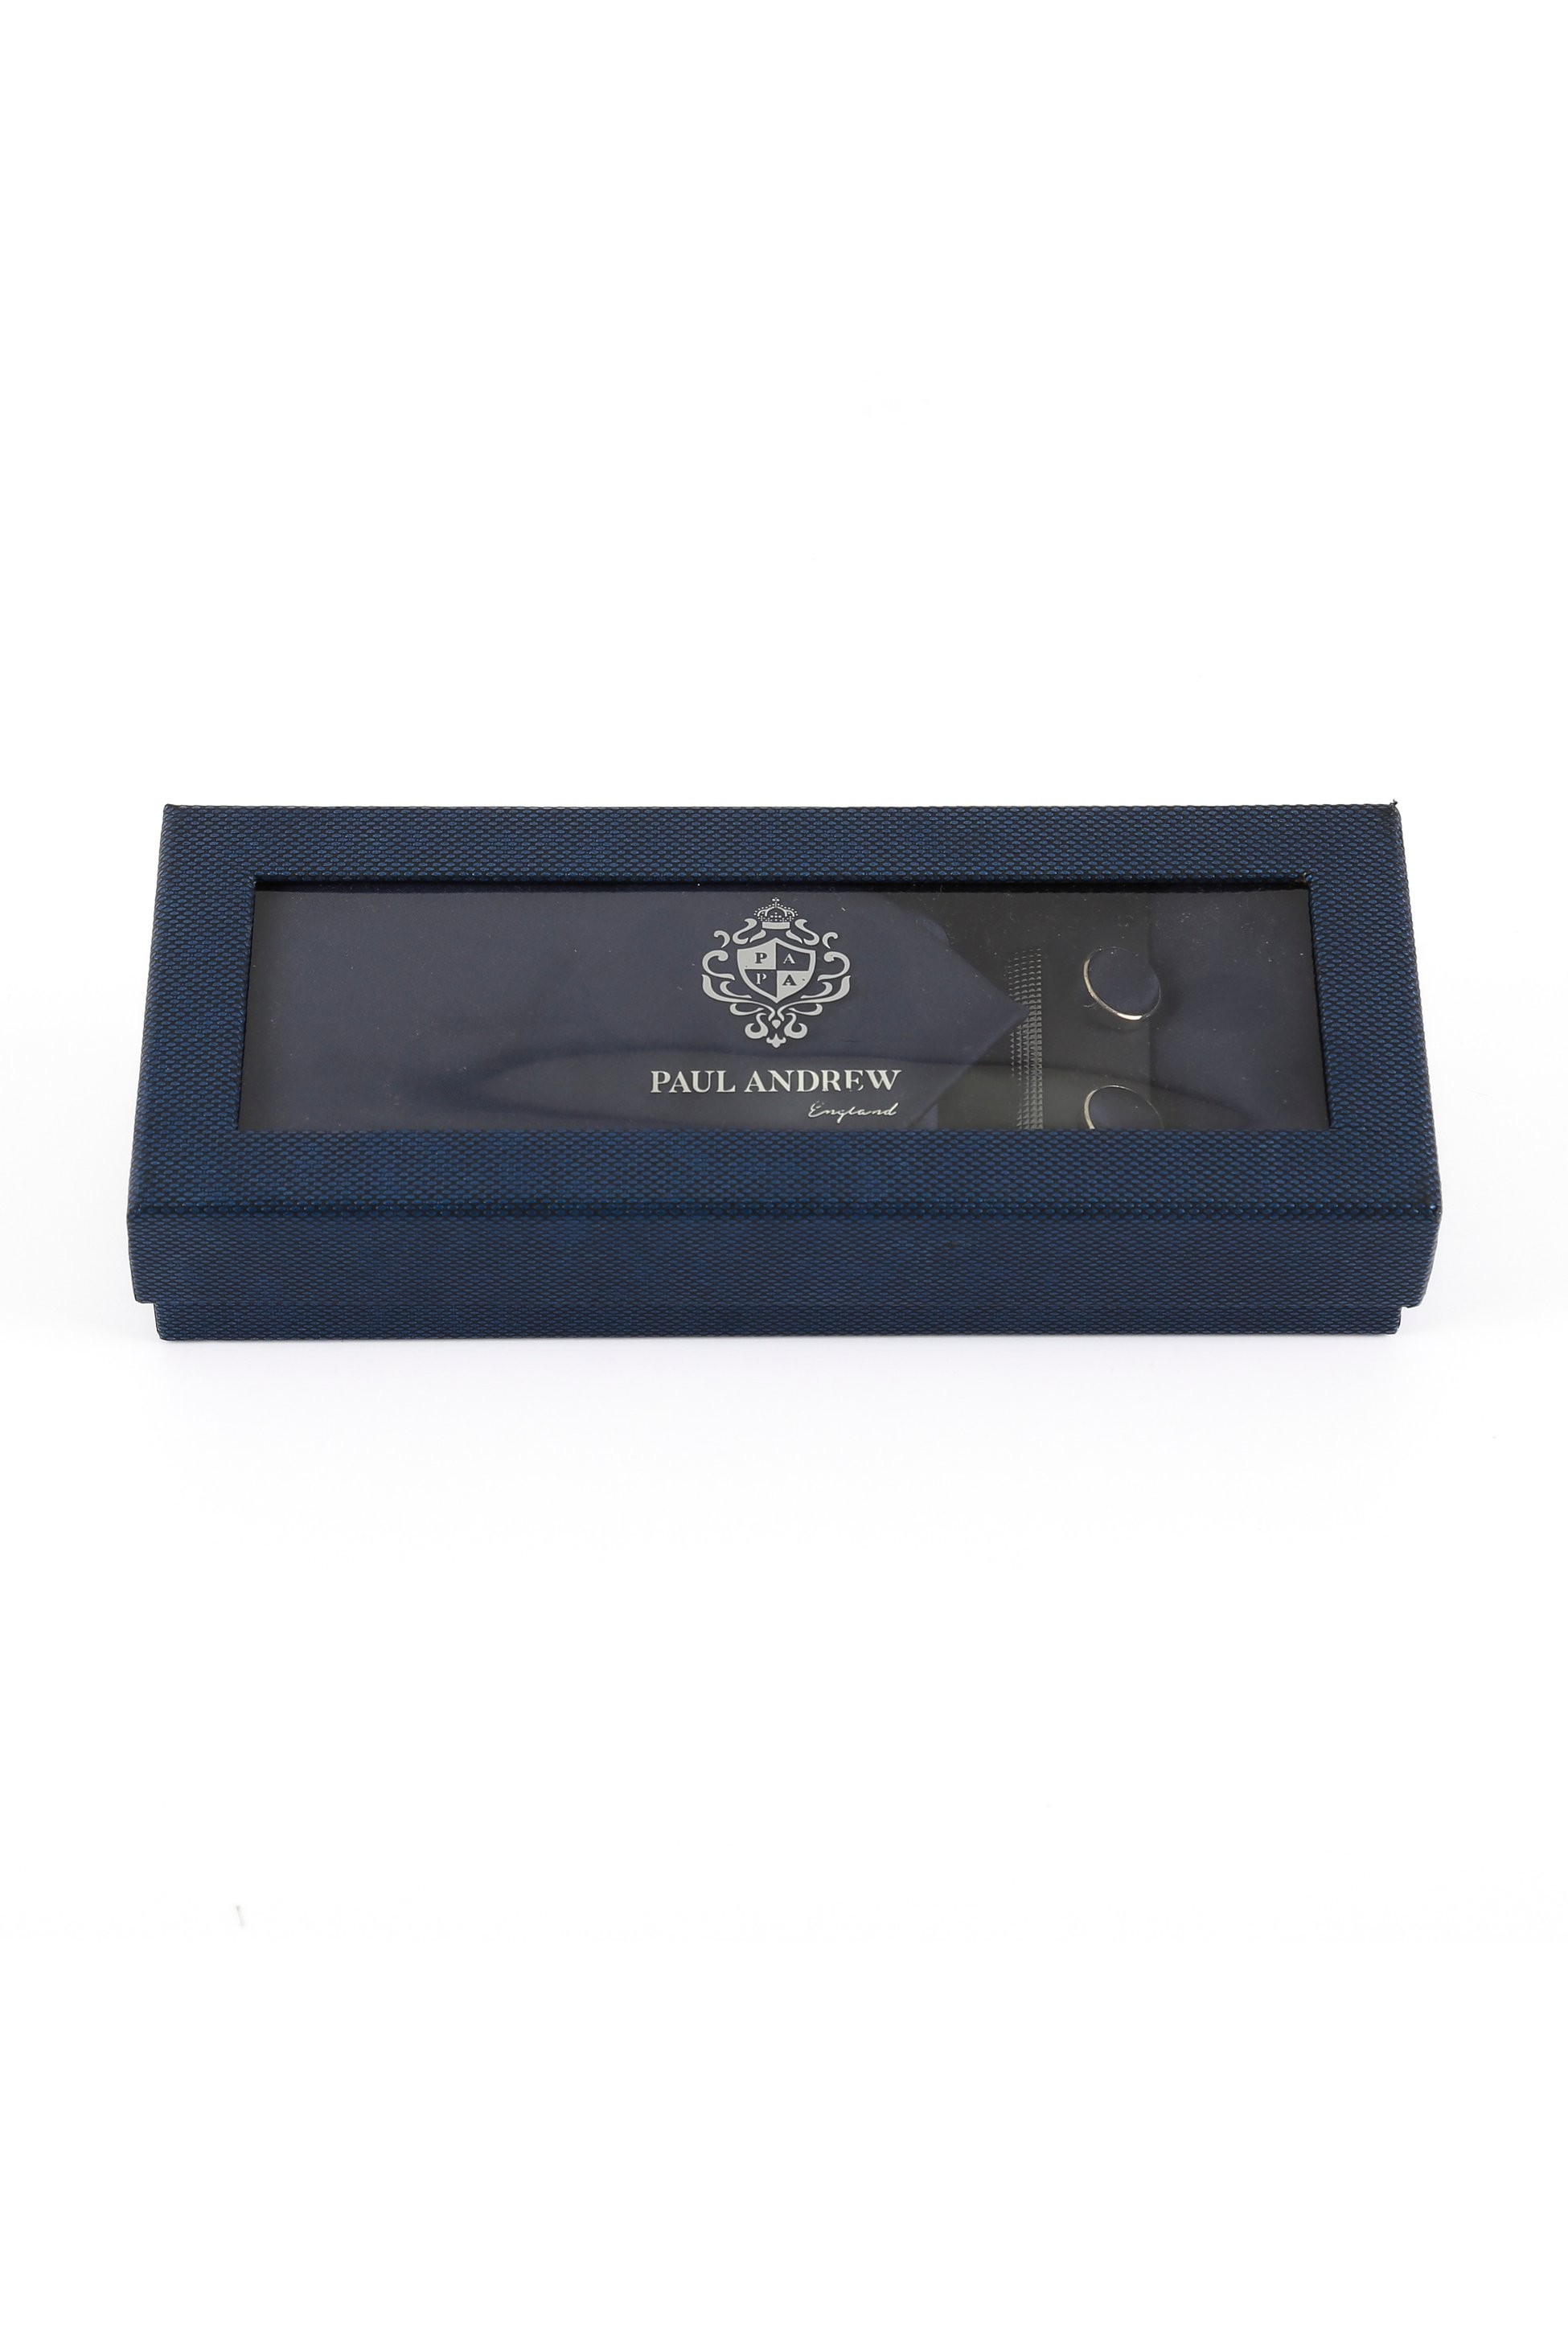 Männer Solide Satin Krawatte Manschettenknopf 4 Teilige Hochzeitsgeschenkset Set - Navy blau